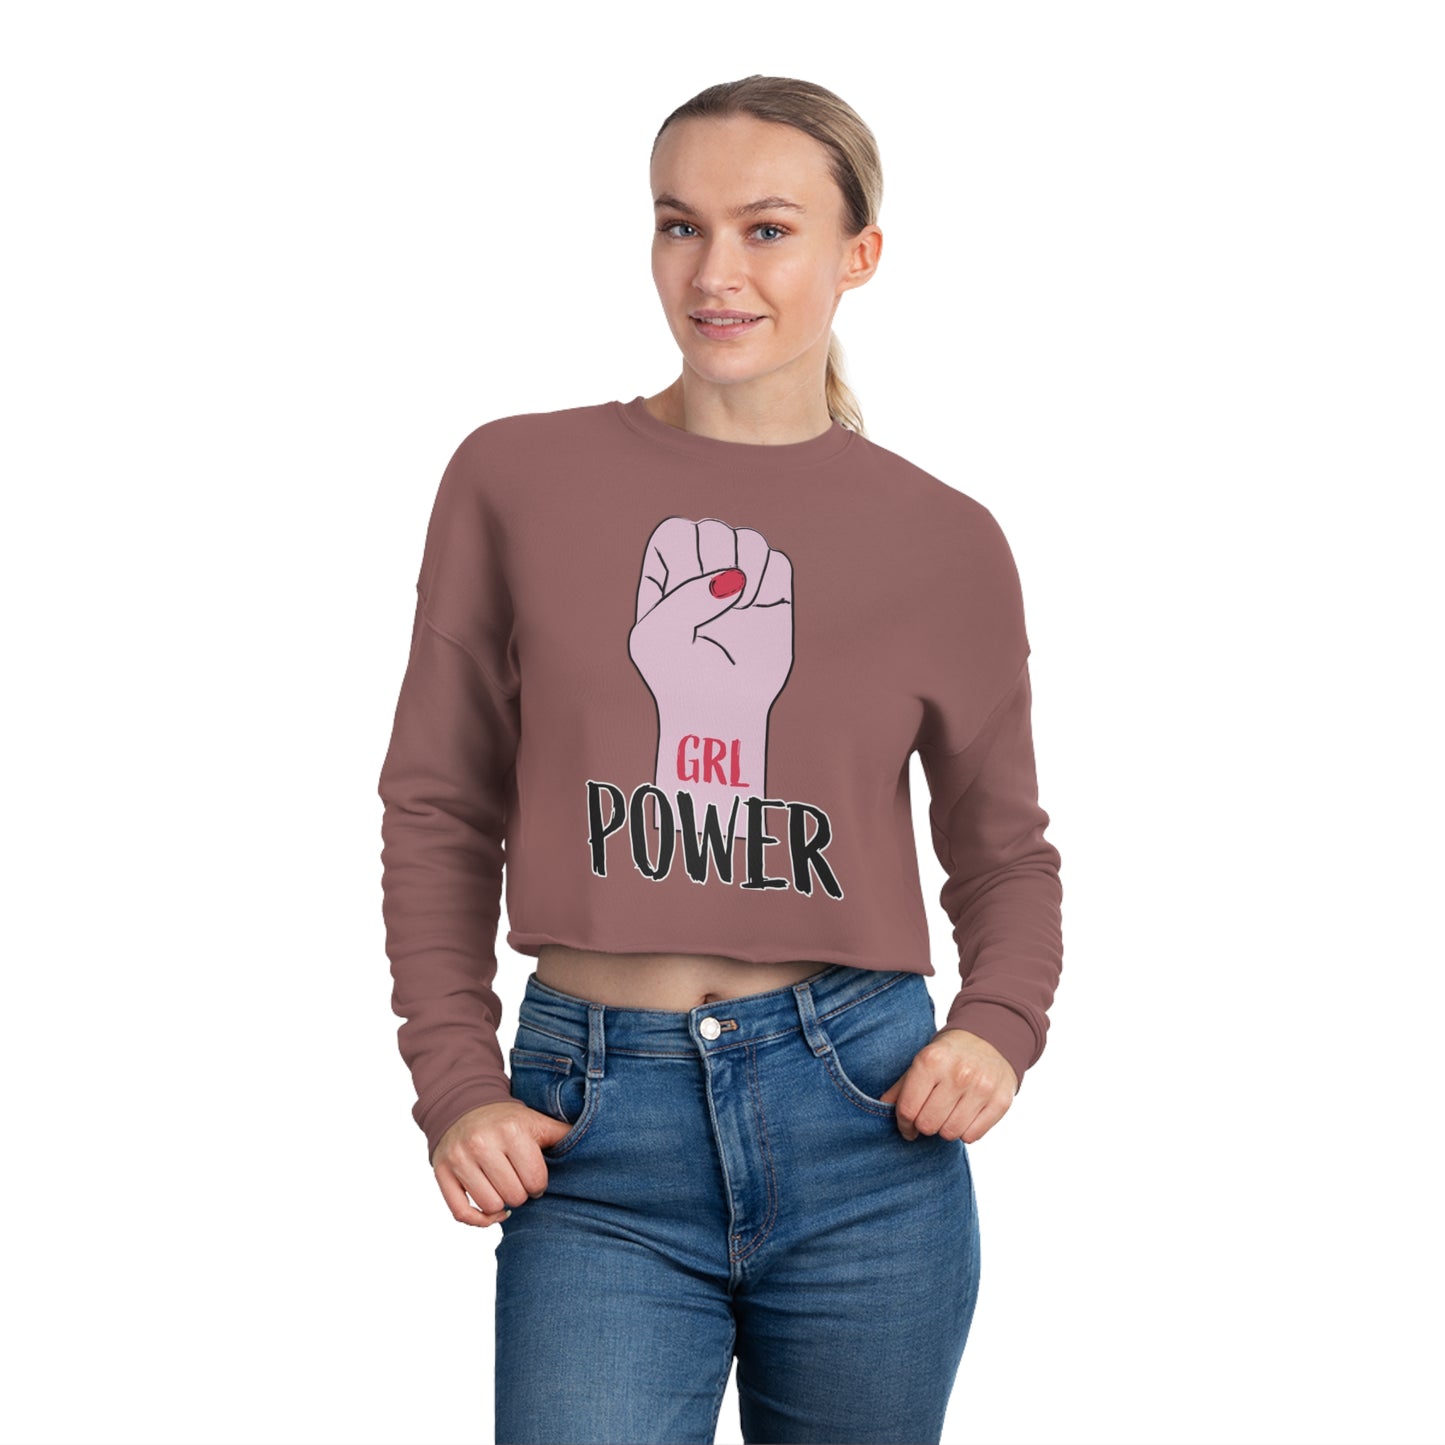 Women's Cropped Sweatshirt